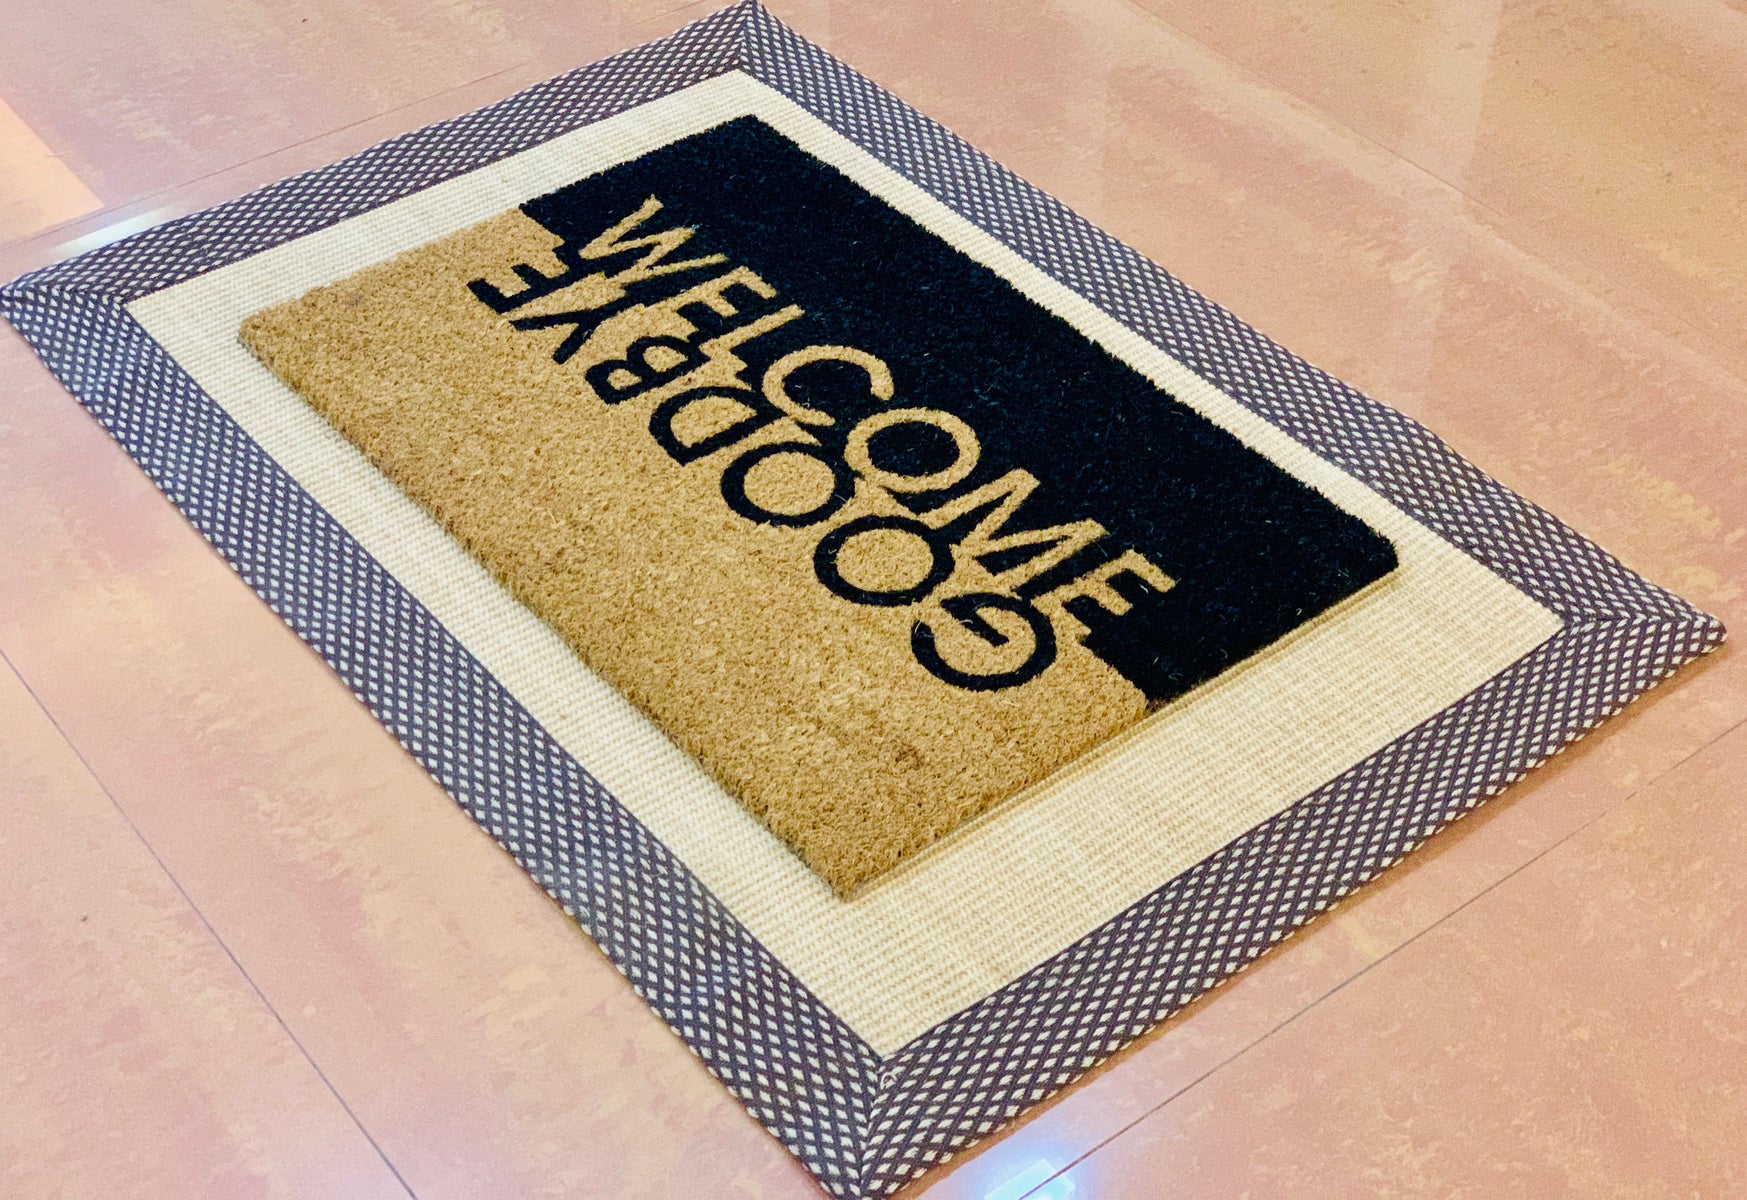 OnlyMat Jute and Coir Doormat Combo - Welcome Goodbye printed Entrance Doormat